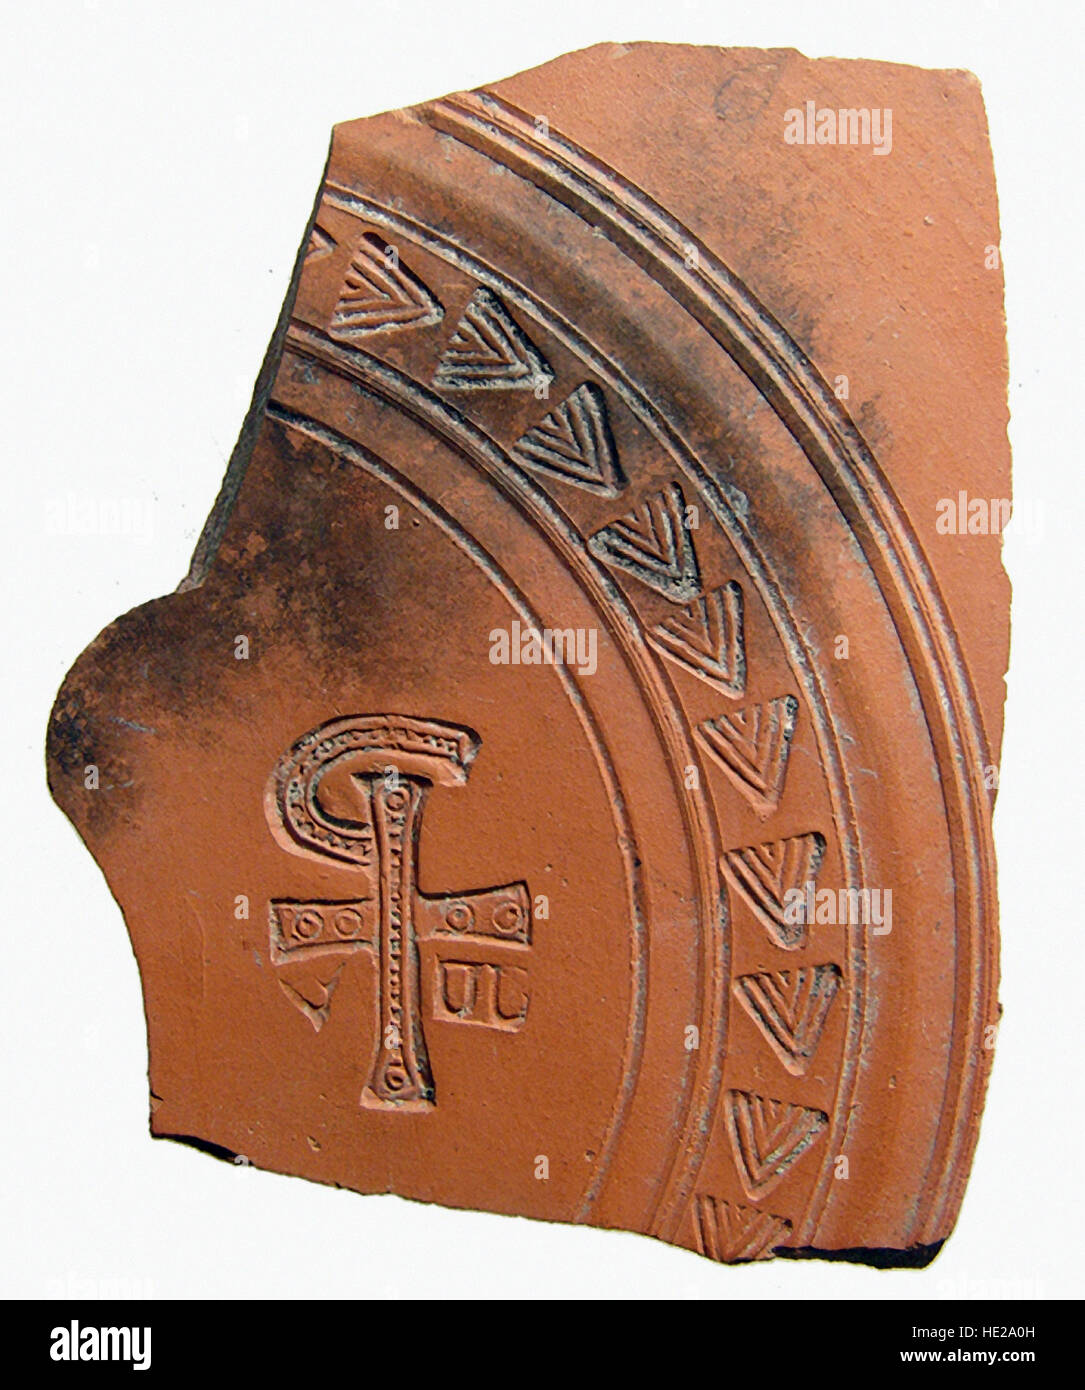 6017. Roman (África del Norte) de tiesto de cerámica que representa la 'Chi Rho', una combinación de letras que forma una abreviatura para el nombre de Jesucristo, c. Foto de stock